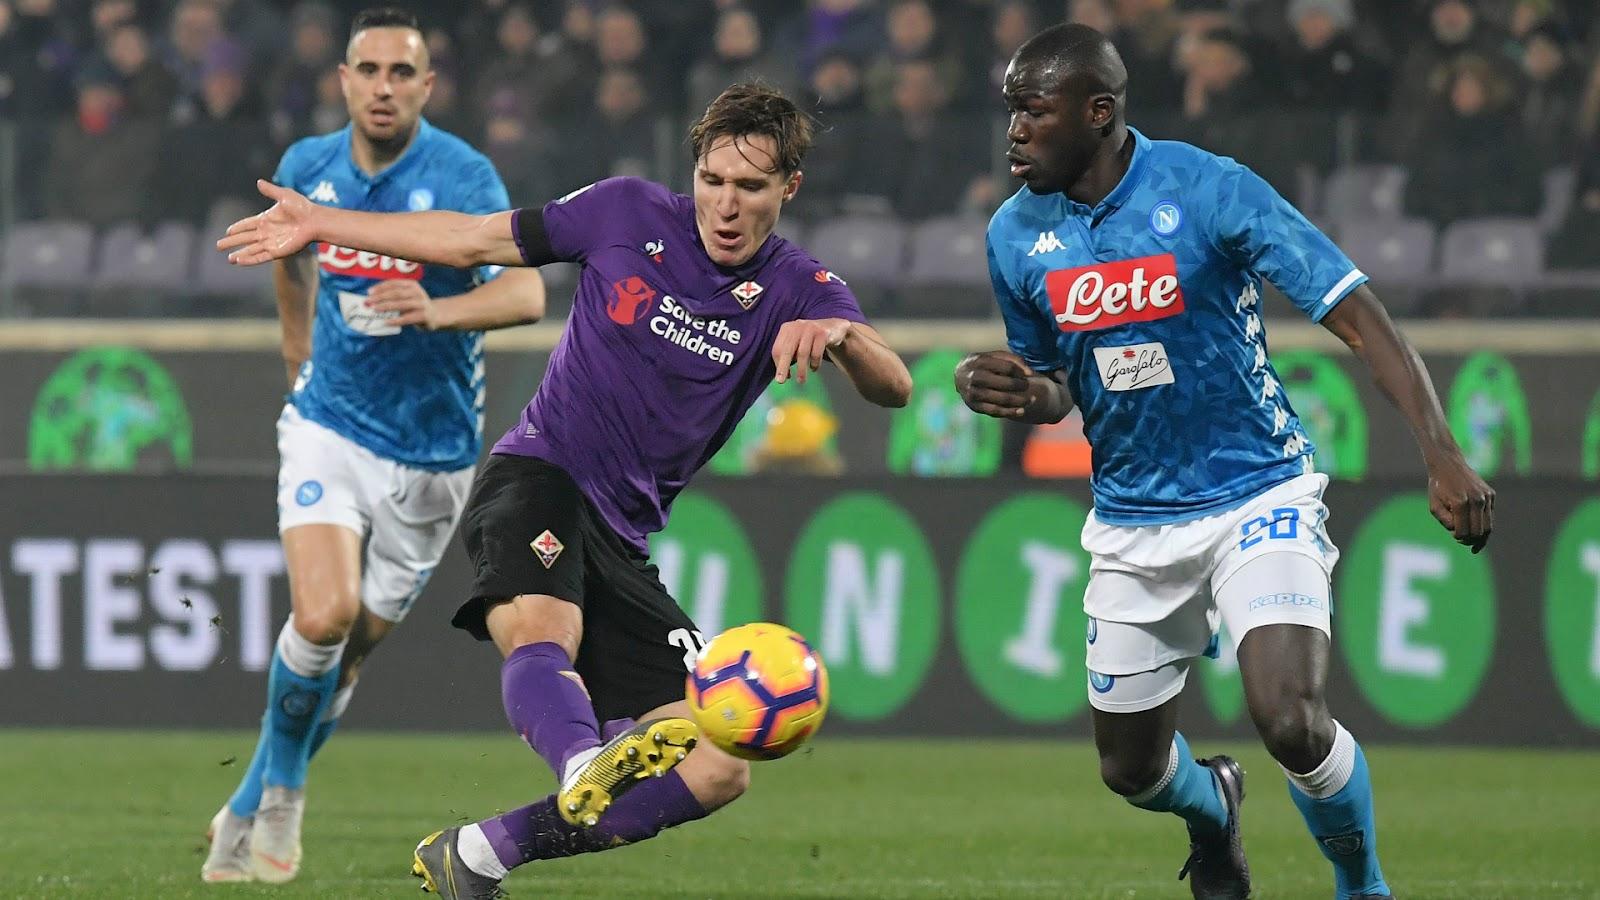 Fiorentina won their last encounter against Napoli 3-2